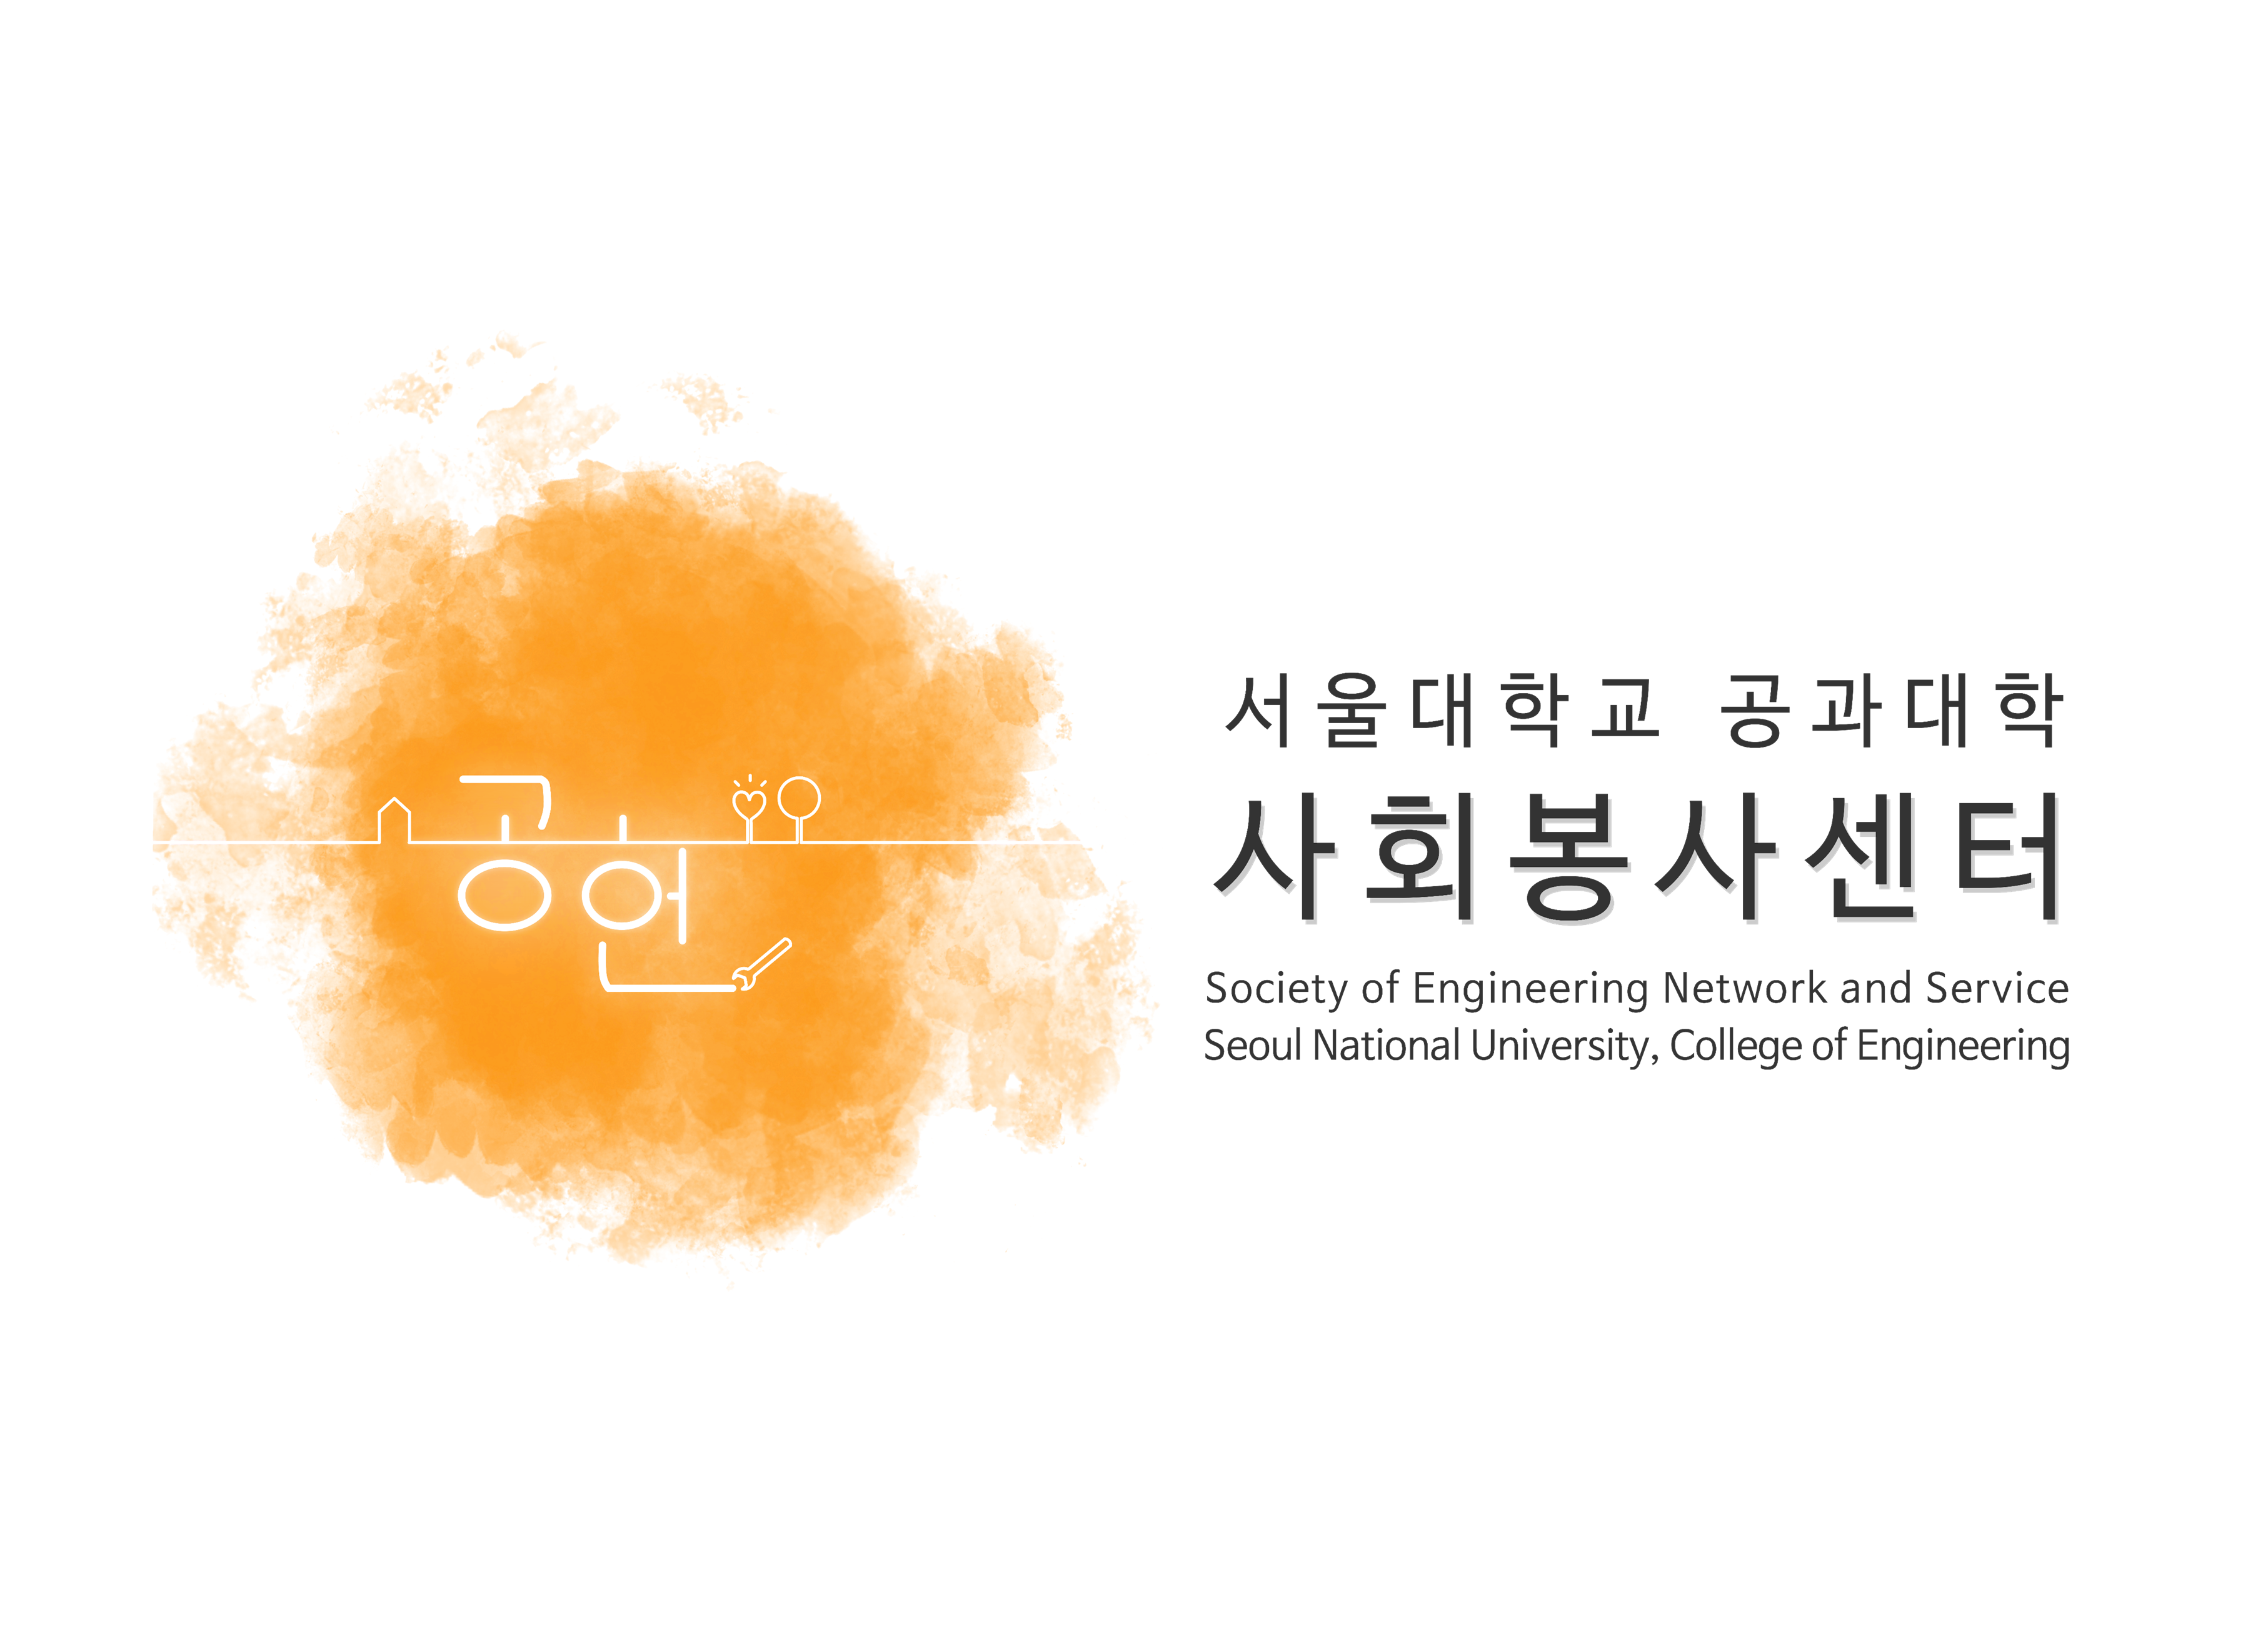 공헌 (Society of Engineering Network and Service)